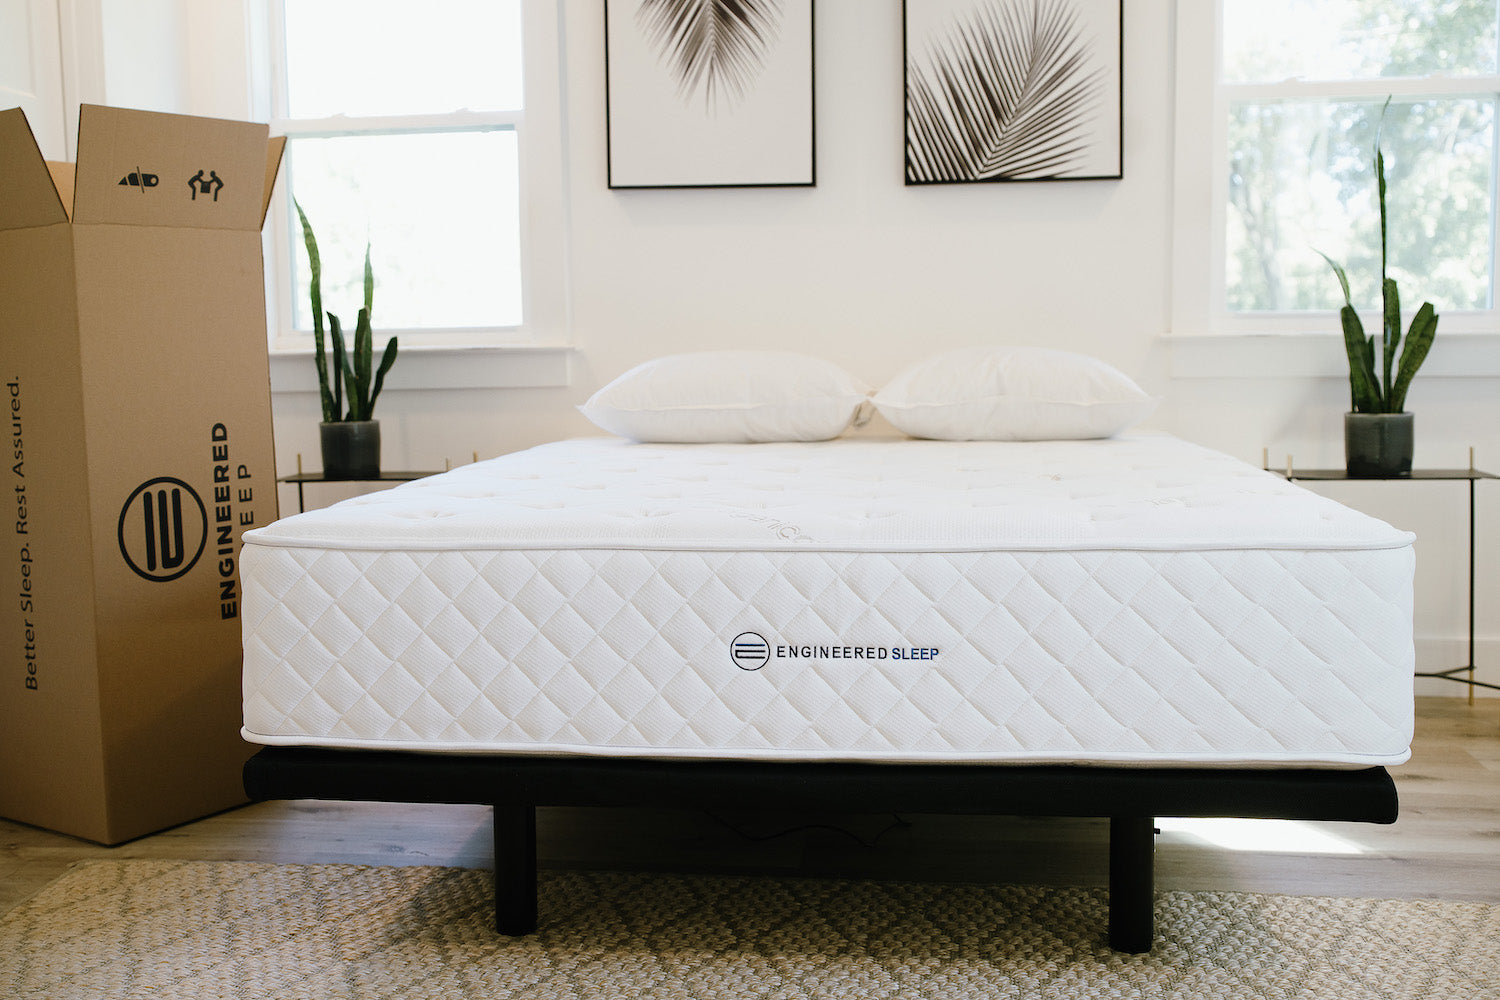 engineered sleep mattress in a bedroom